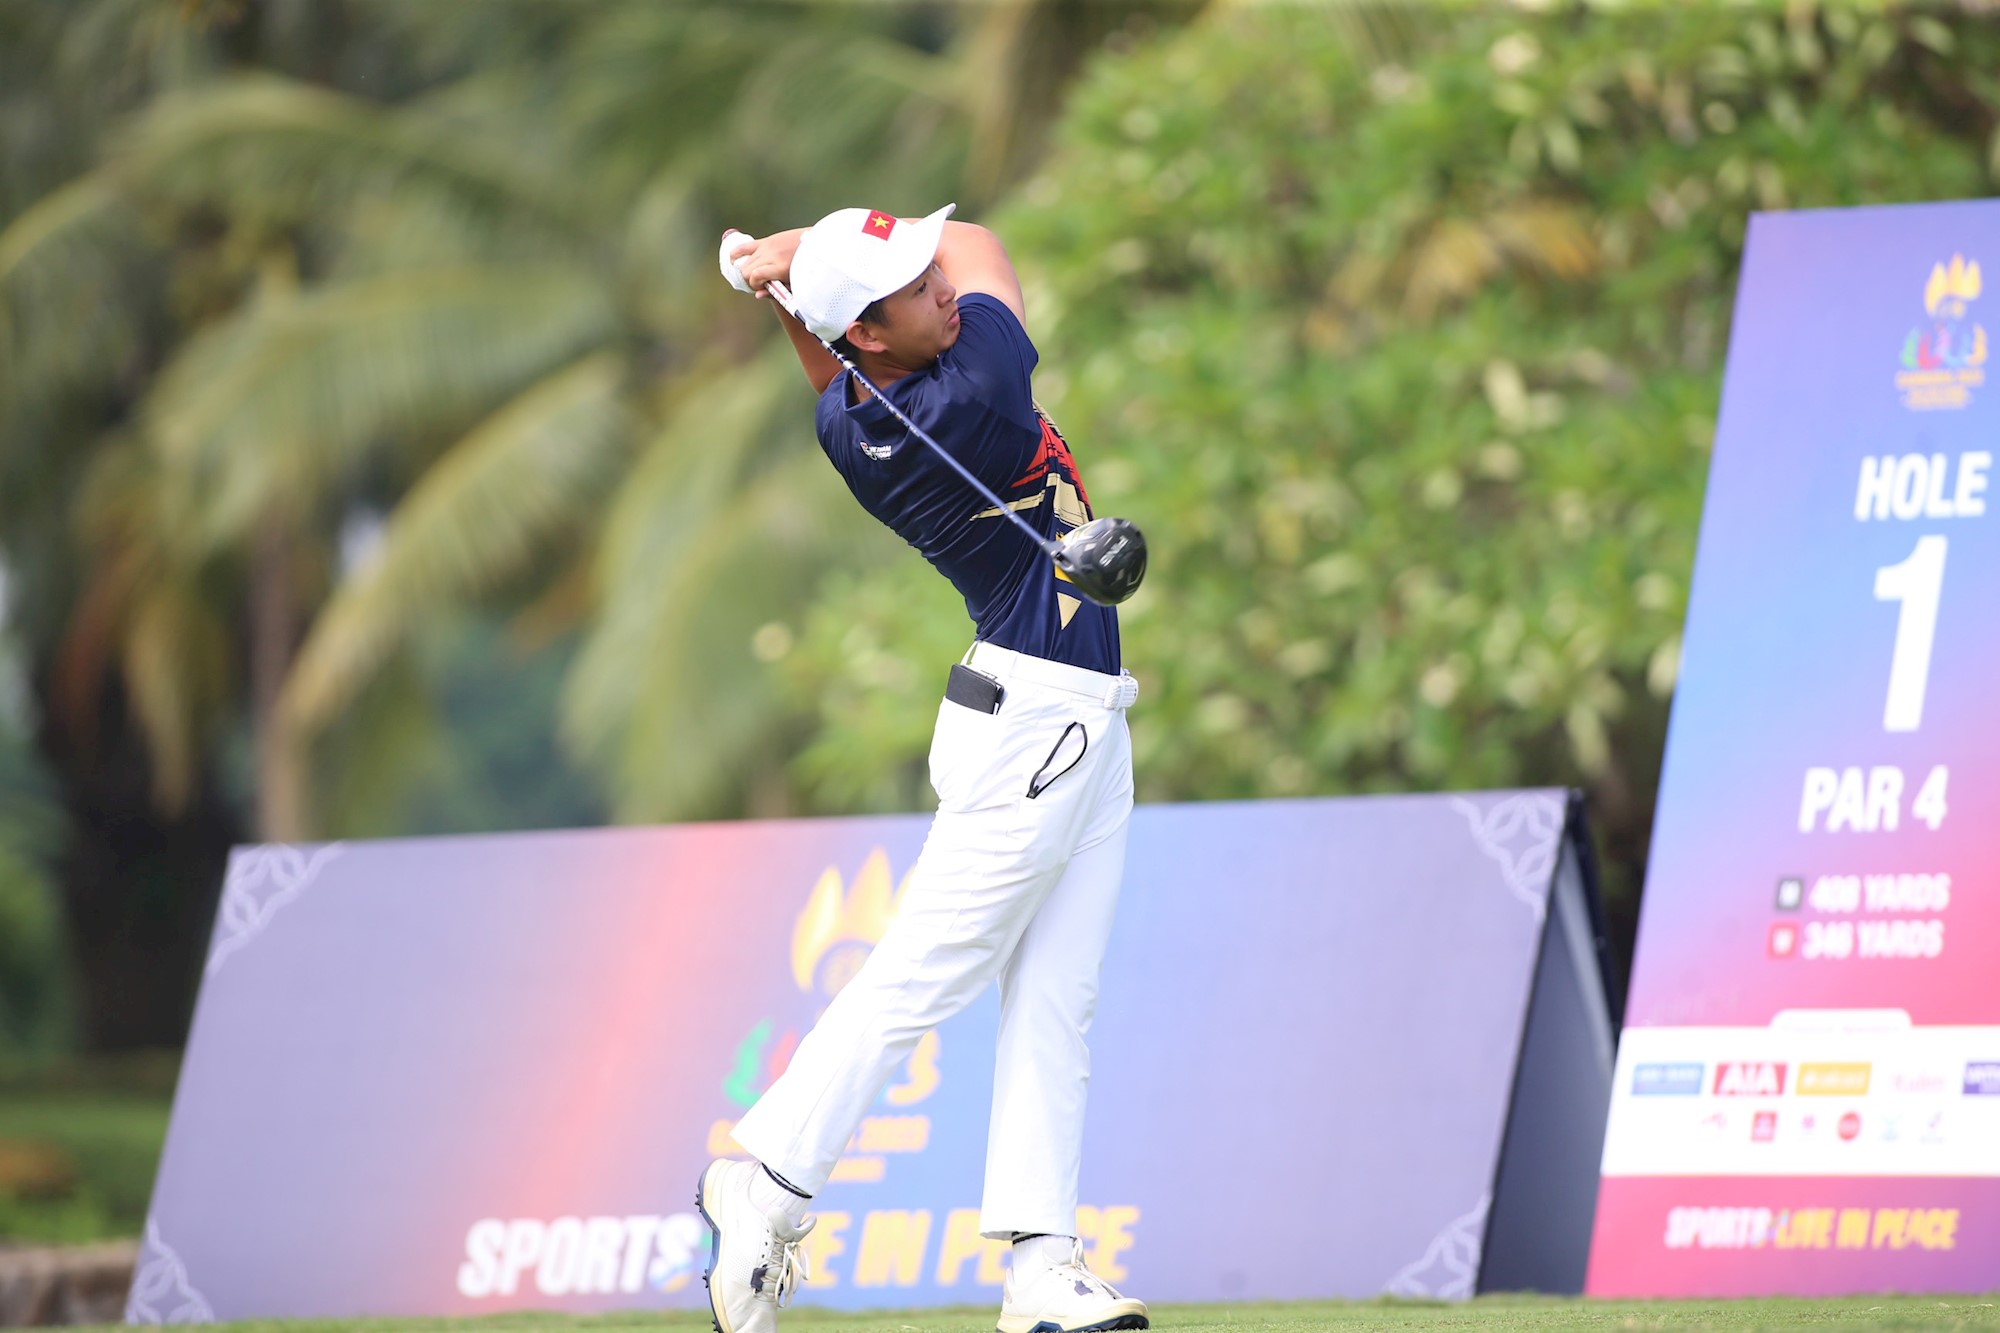 Golfer trẻ Lê Khánh Hưng giành Huy chương vàng lịch sử cho golf Việt Nam